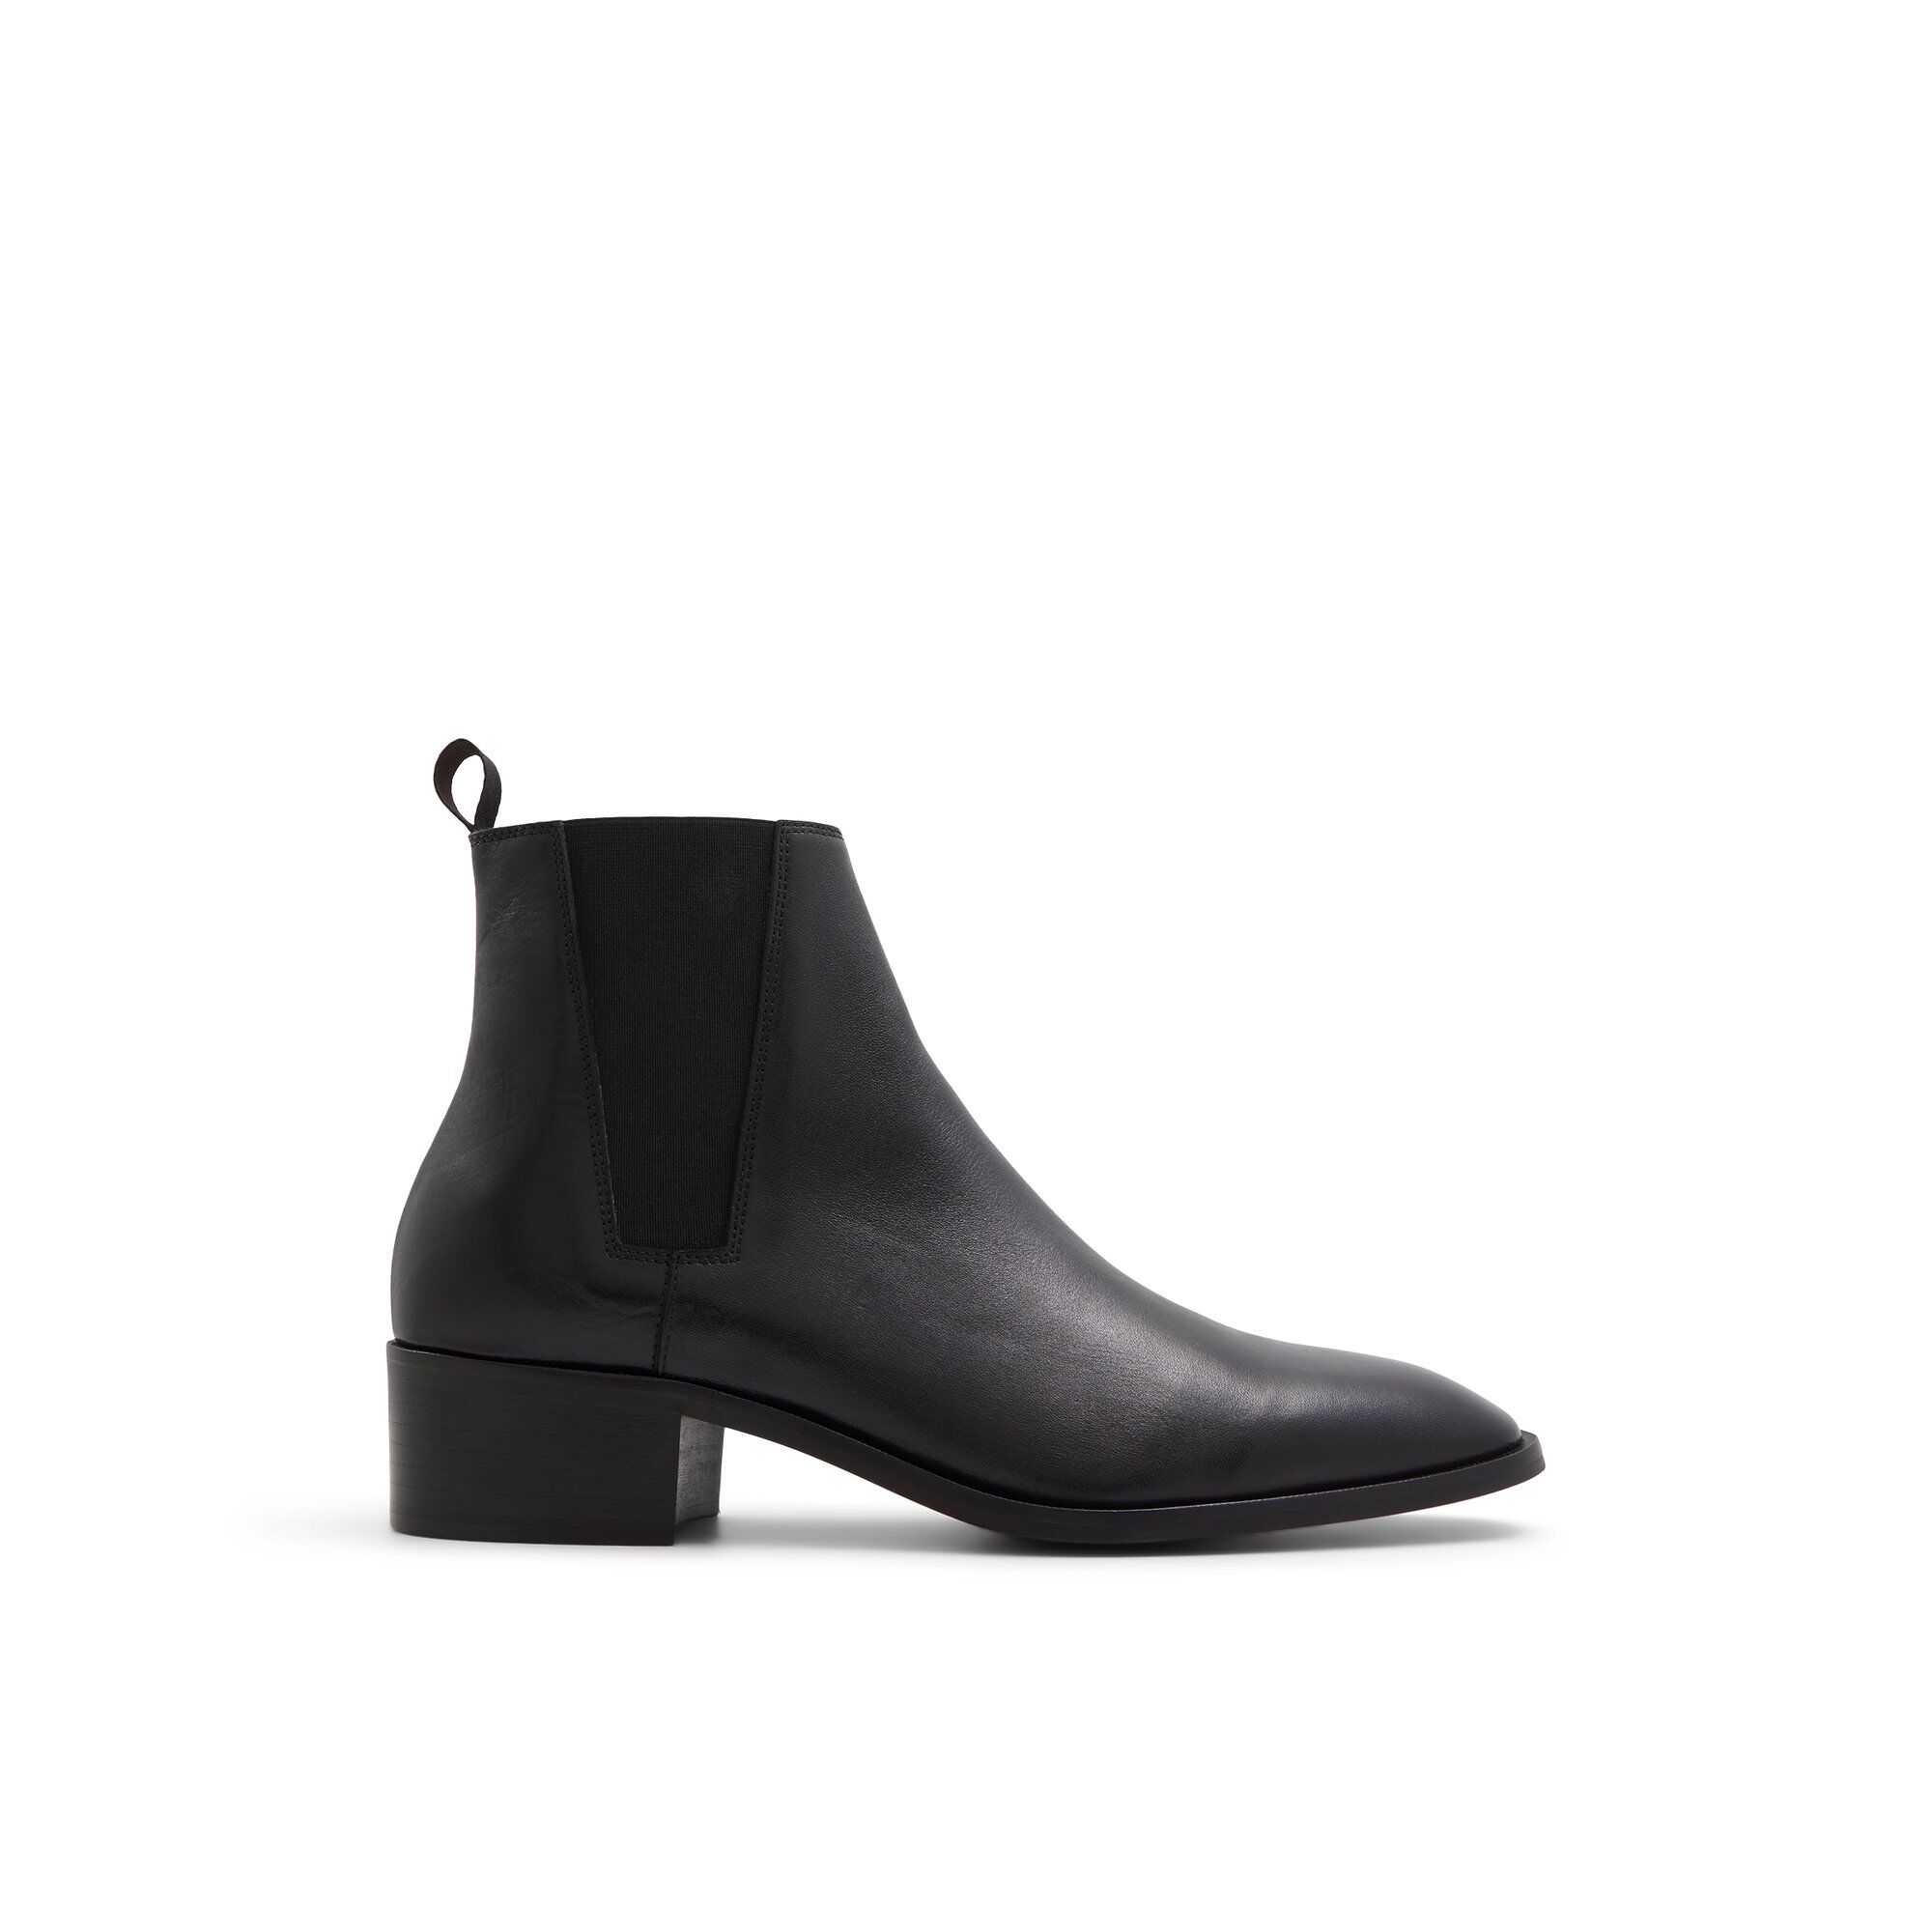 ALDO Ruchstock - Men's Boot - Black, Size 12